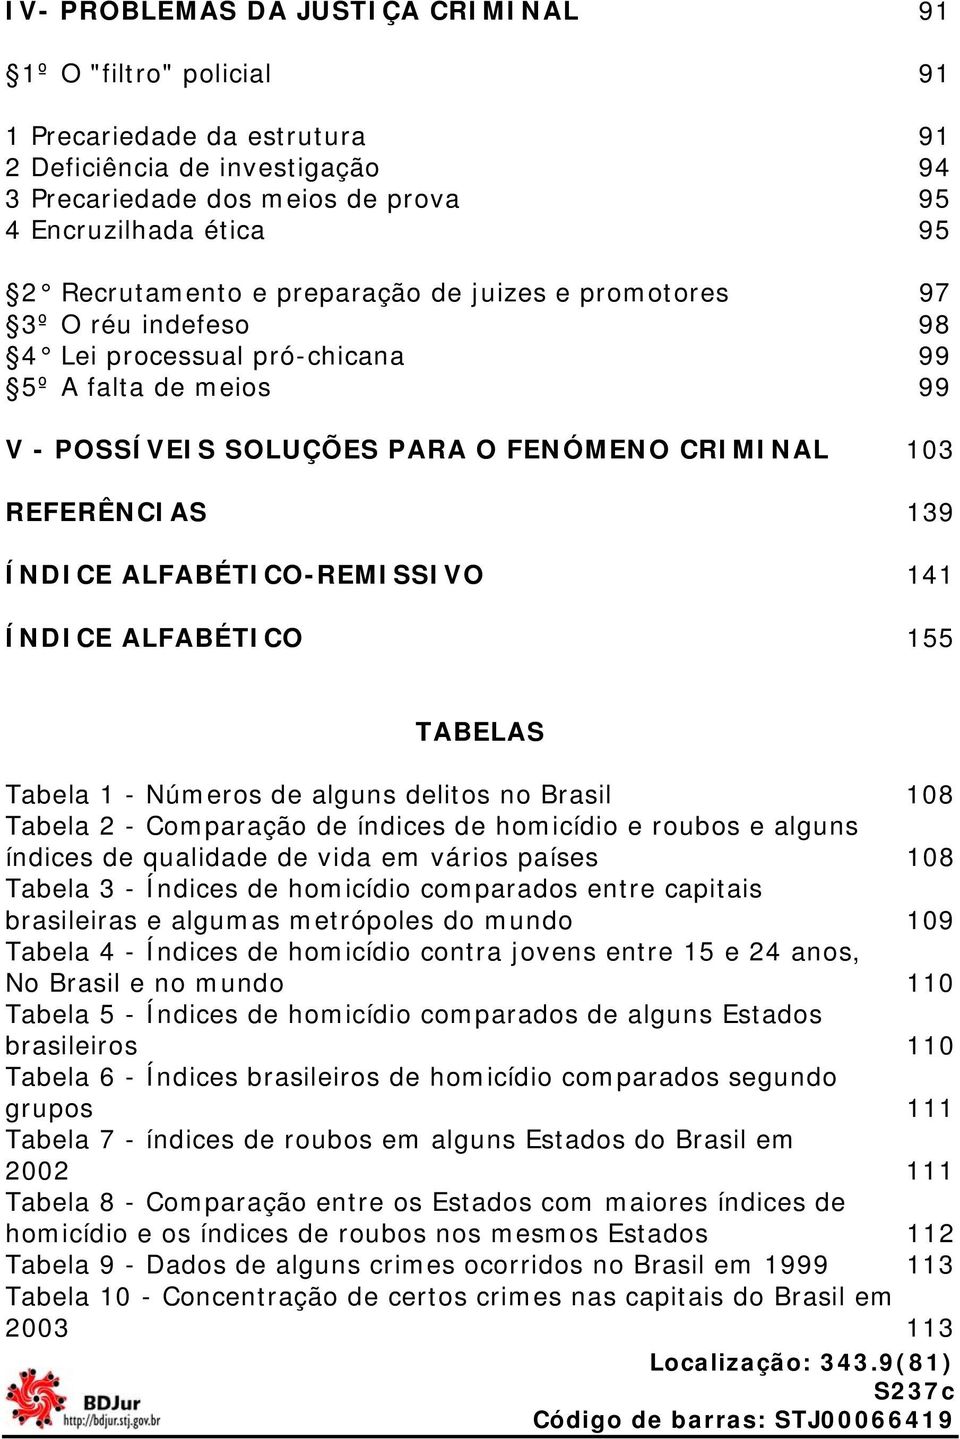 ÍNDICE ALFABÉTICO-REMISSIVO 141 ÍNDICE ALFABÉTICO 155 TABELAS Tabela 1 - Números de alguns delitos no Brasil 108 Tabela 2 - Comparação de índices de homicídio e roubos e alguns índices de qualidade